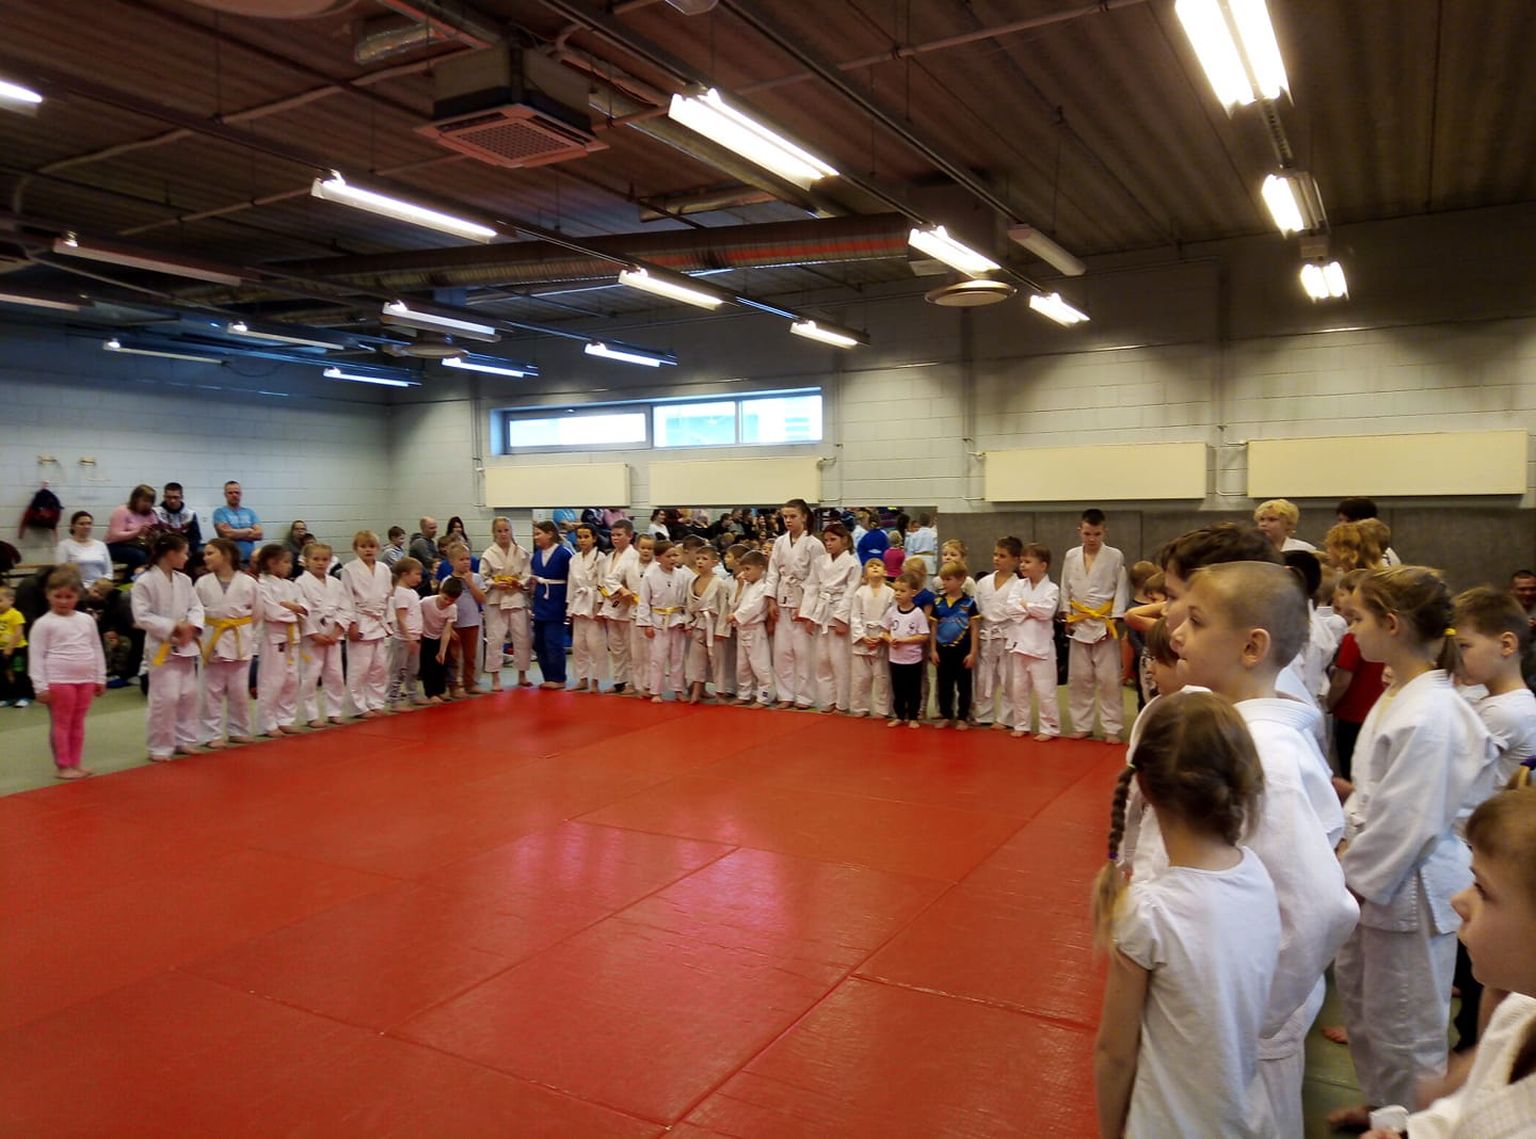 Eelmisel nädalavahetusel Võru spordikeskuses toimunud sumo- ja judoturniiril osales 72 last Võrumaa koolidest ja lasteaedadest.